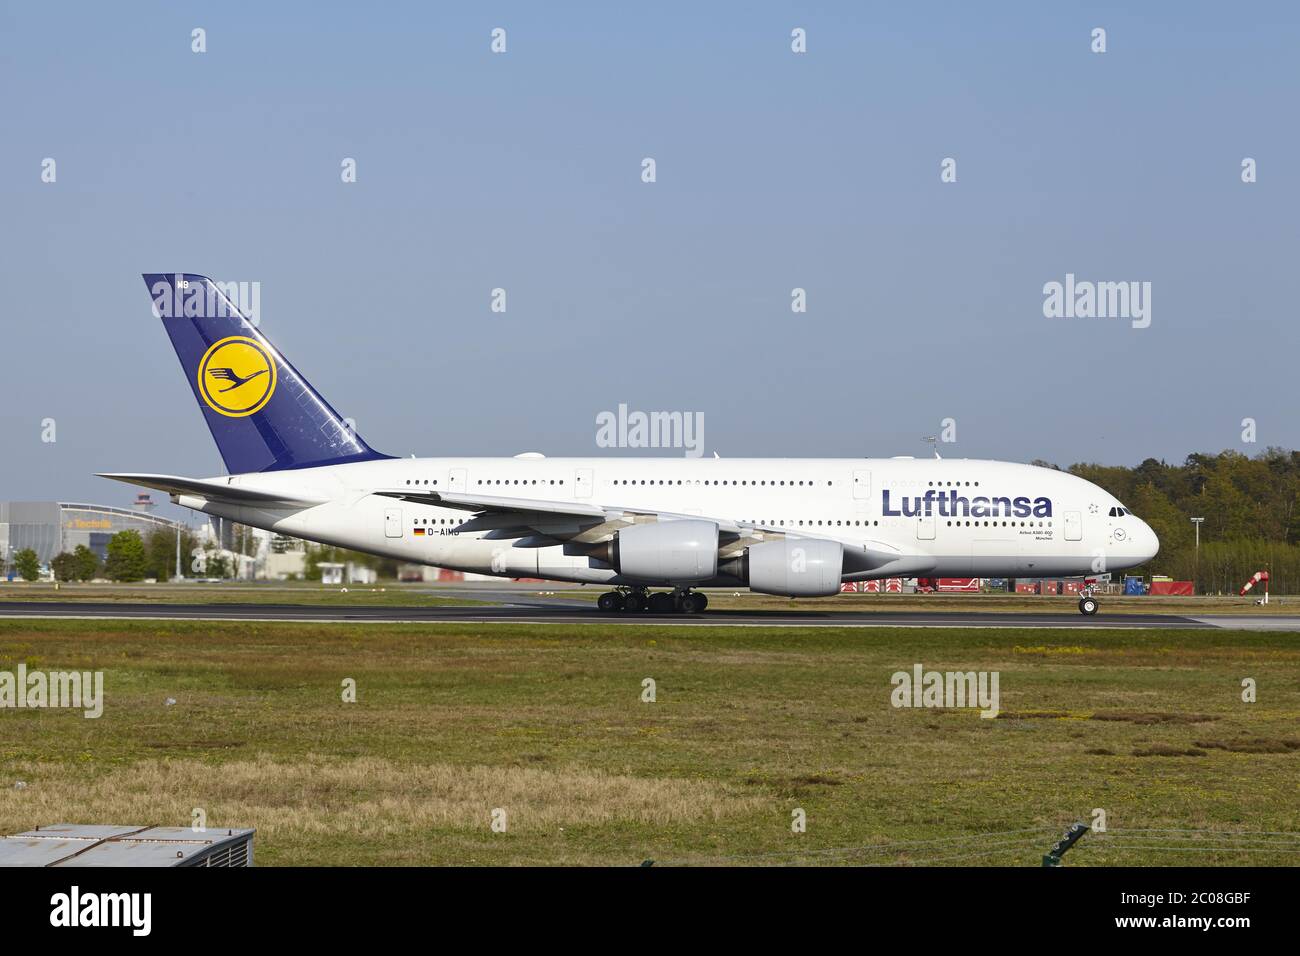 Aéroport de Francfort-sur-le-main - l'Airbus A380 de Lufthansa prend son envol Banque D'Images